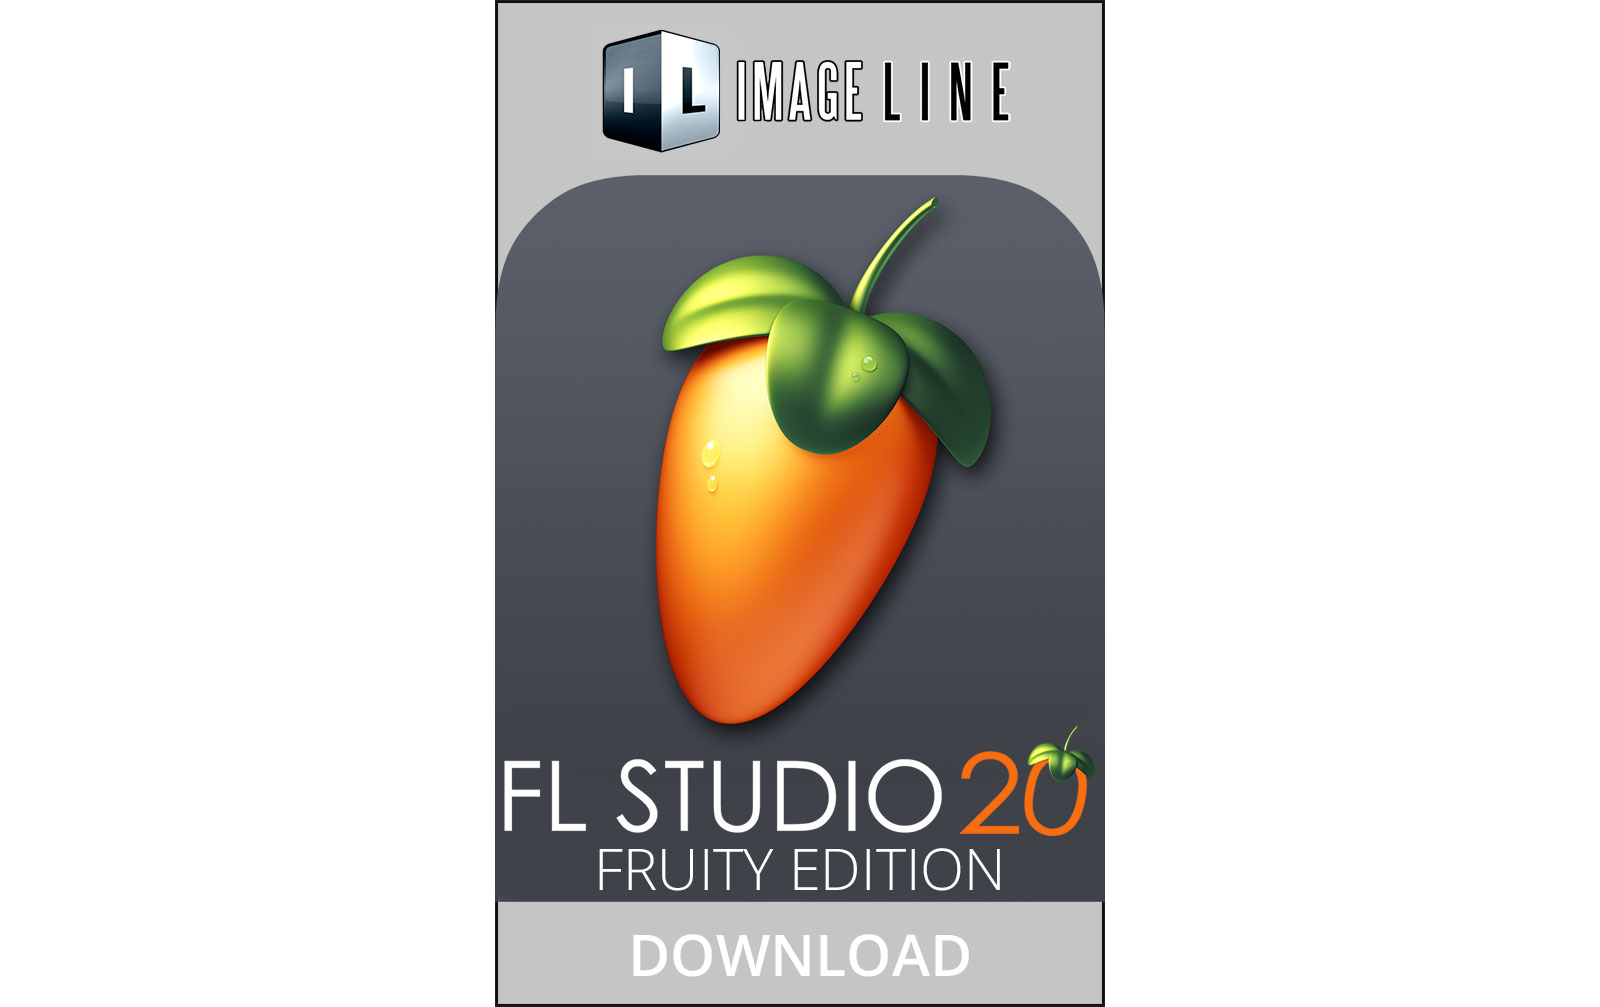 image line fl studio 20